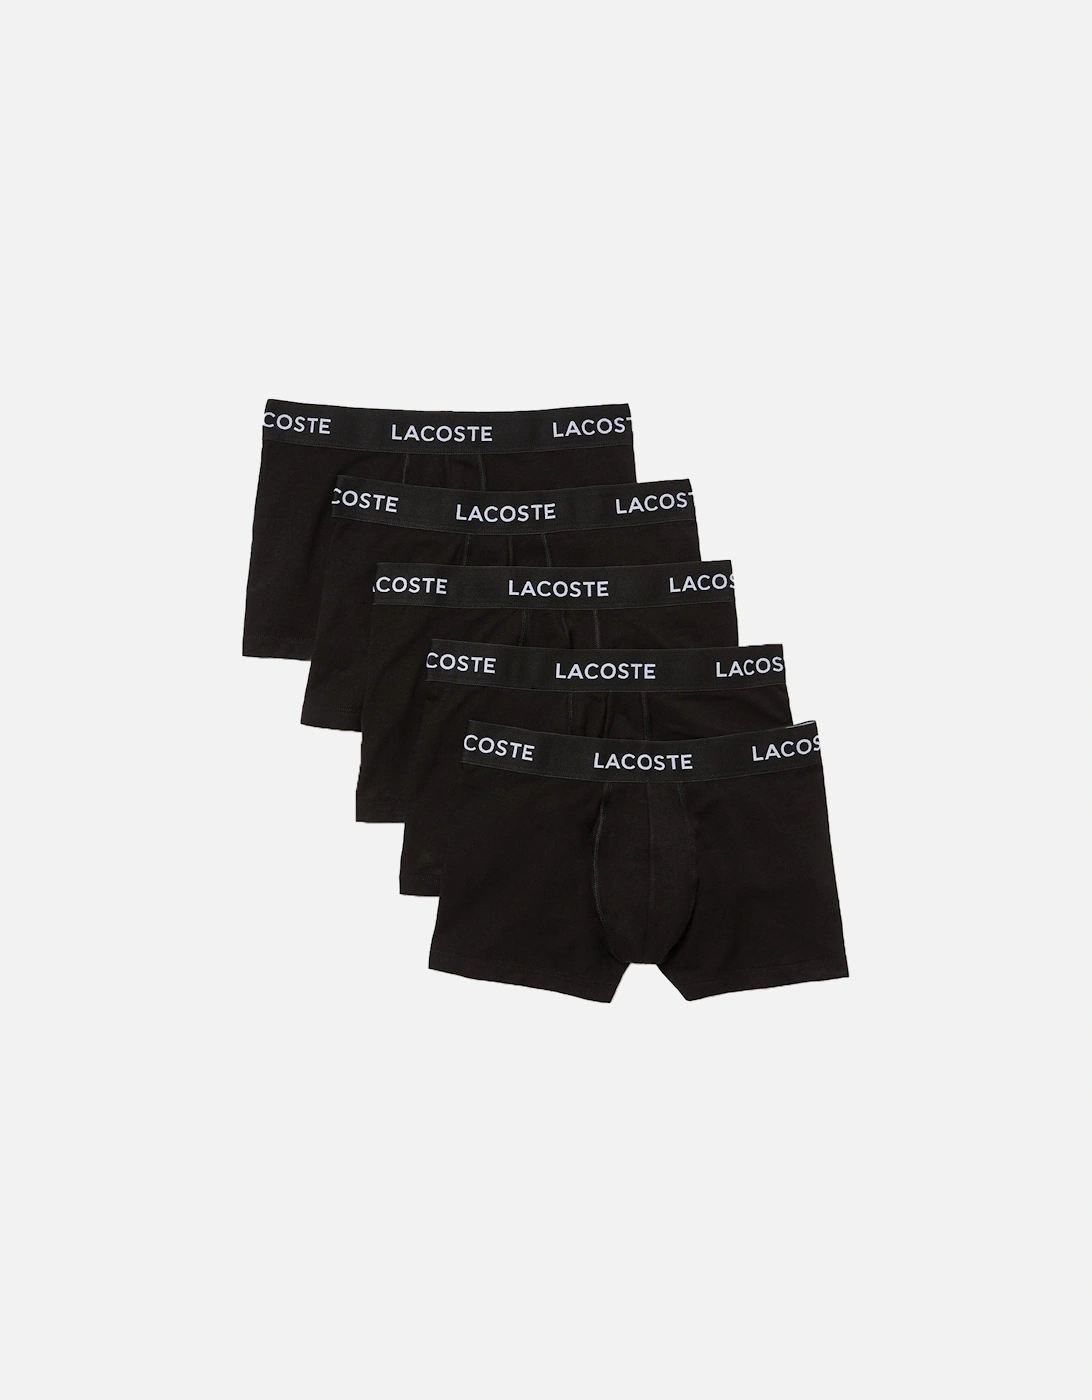 Lacoste Black Cotton Underwear